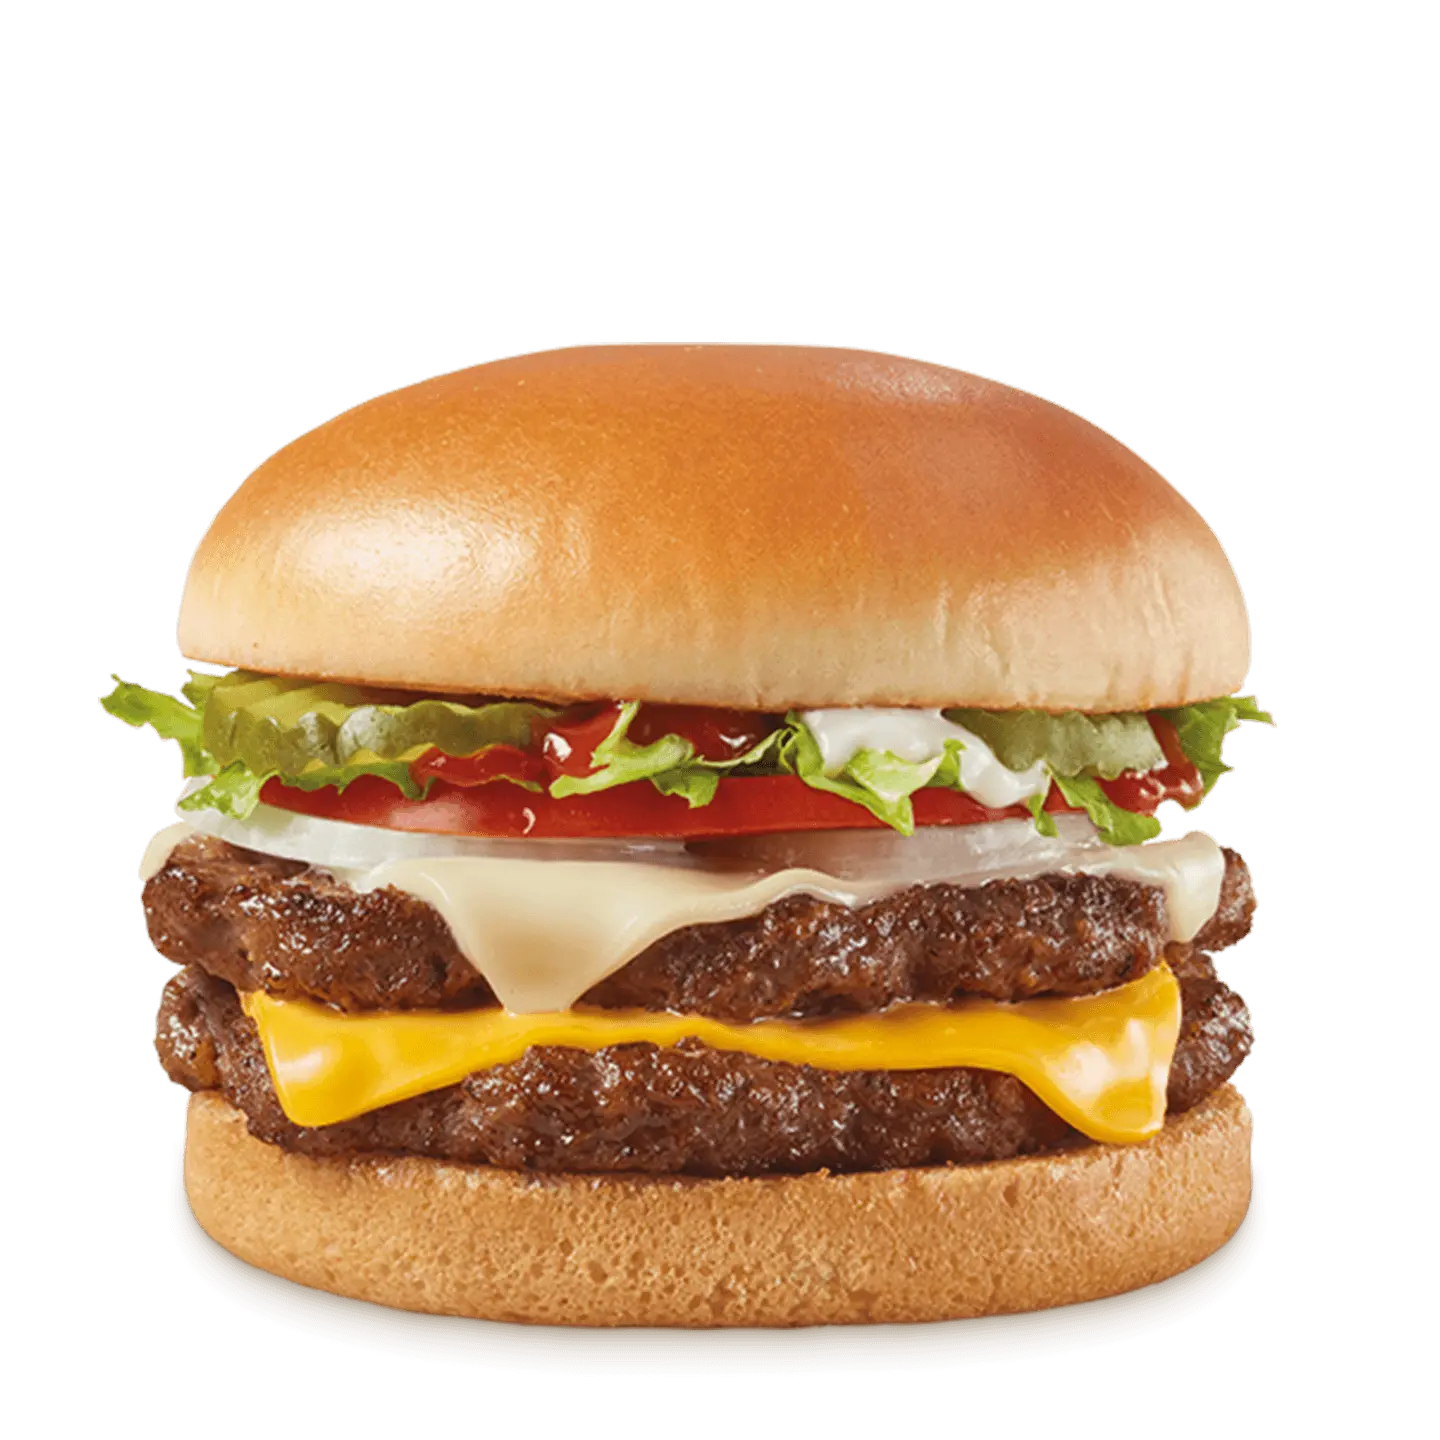 https://www.dairyqueen.com/dA/c1badbcf61/DQ-Stackburger-Two-Cheese-Deluxe-Double.png/webp